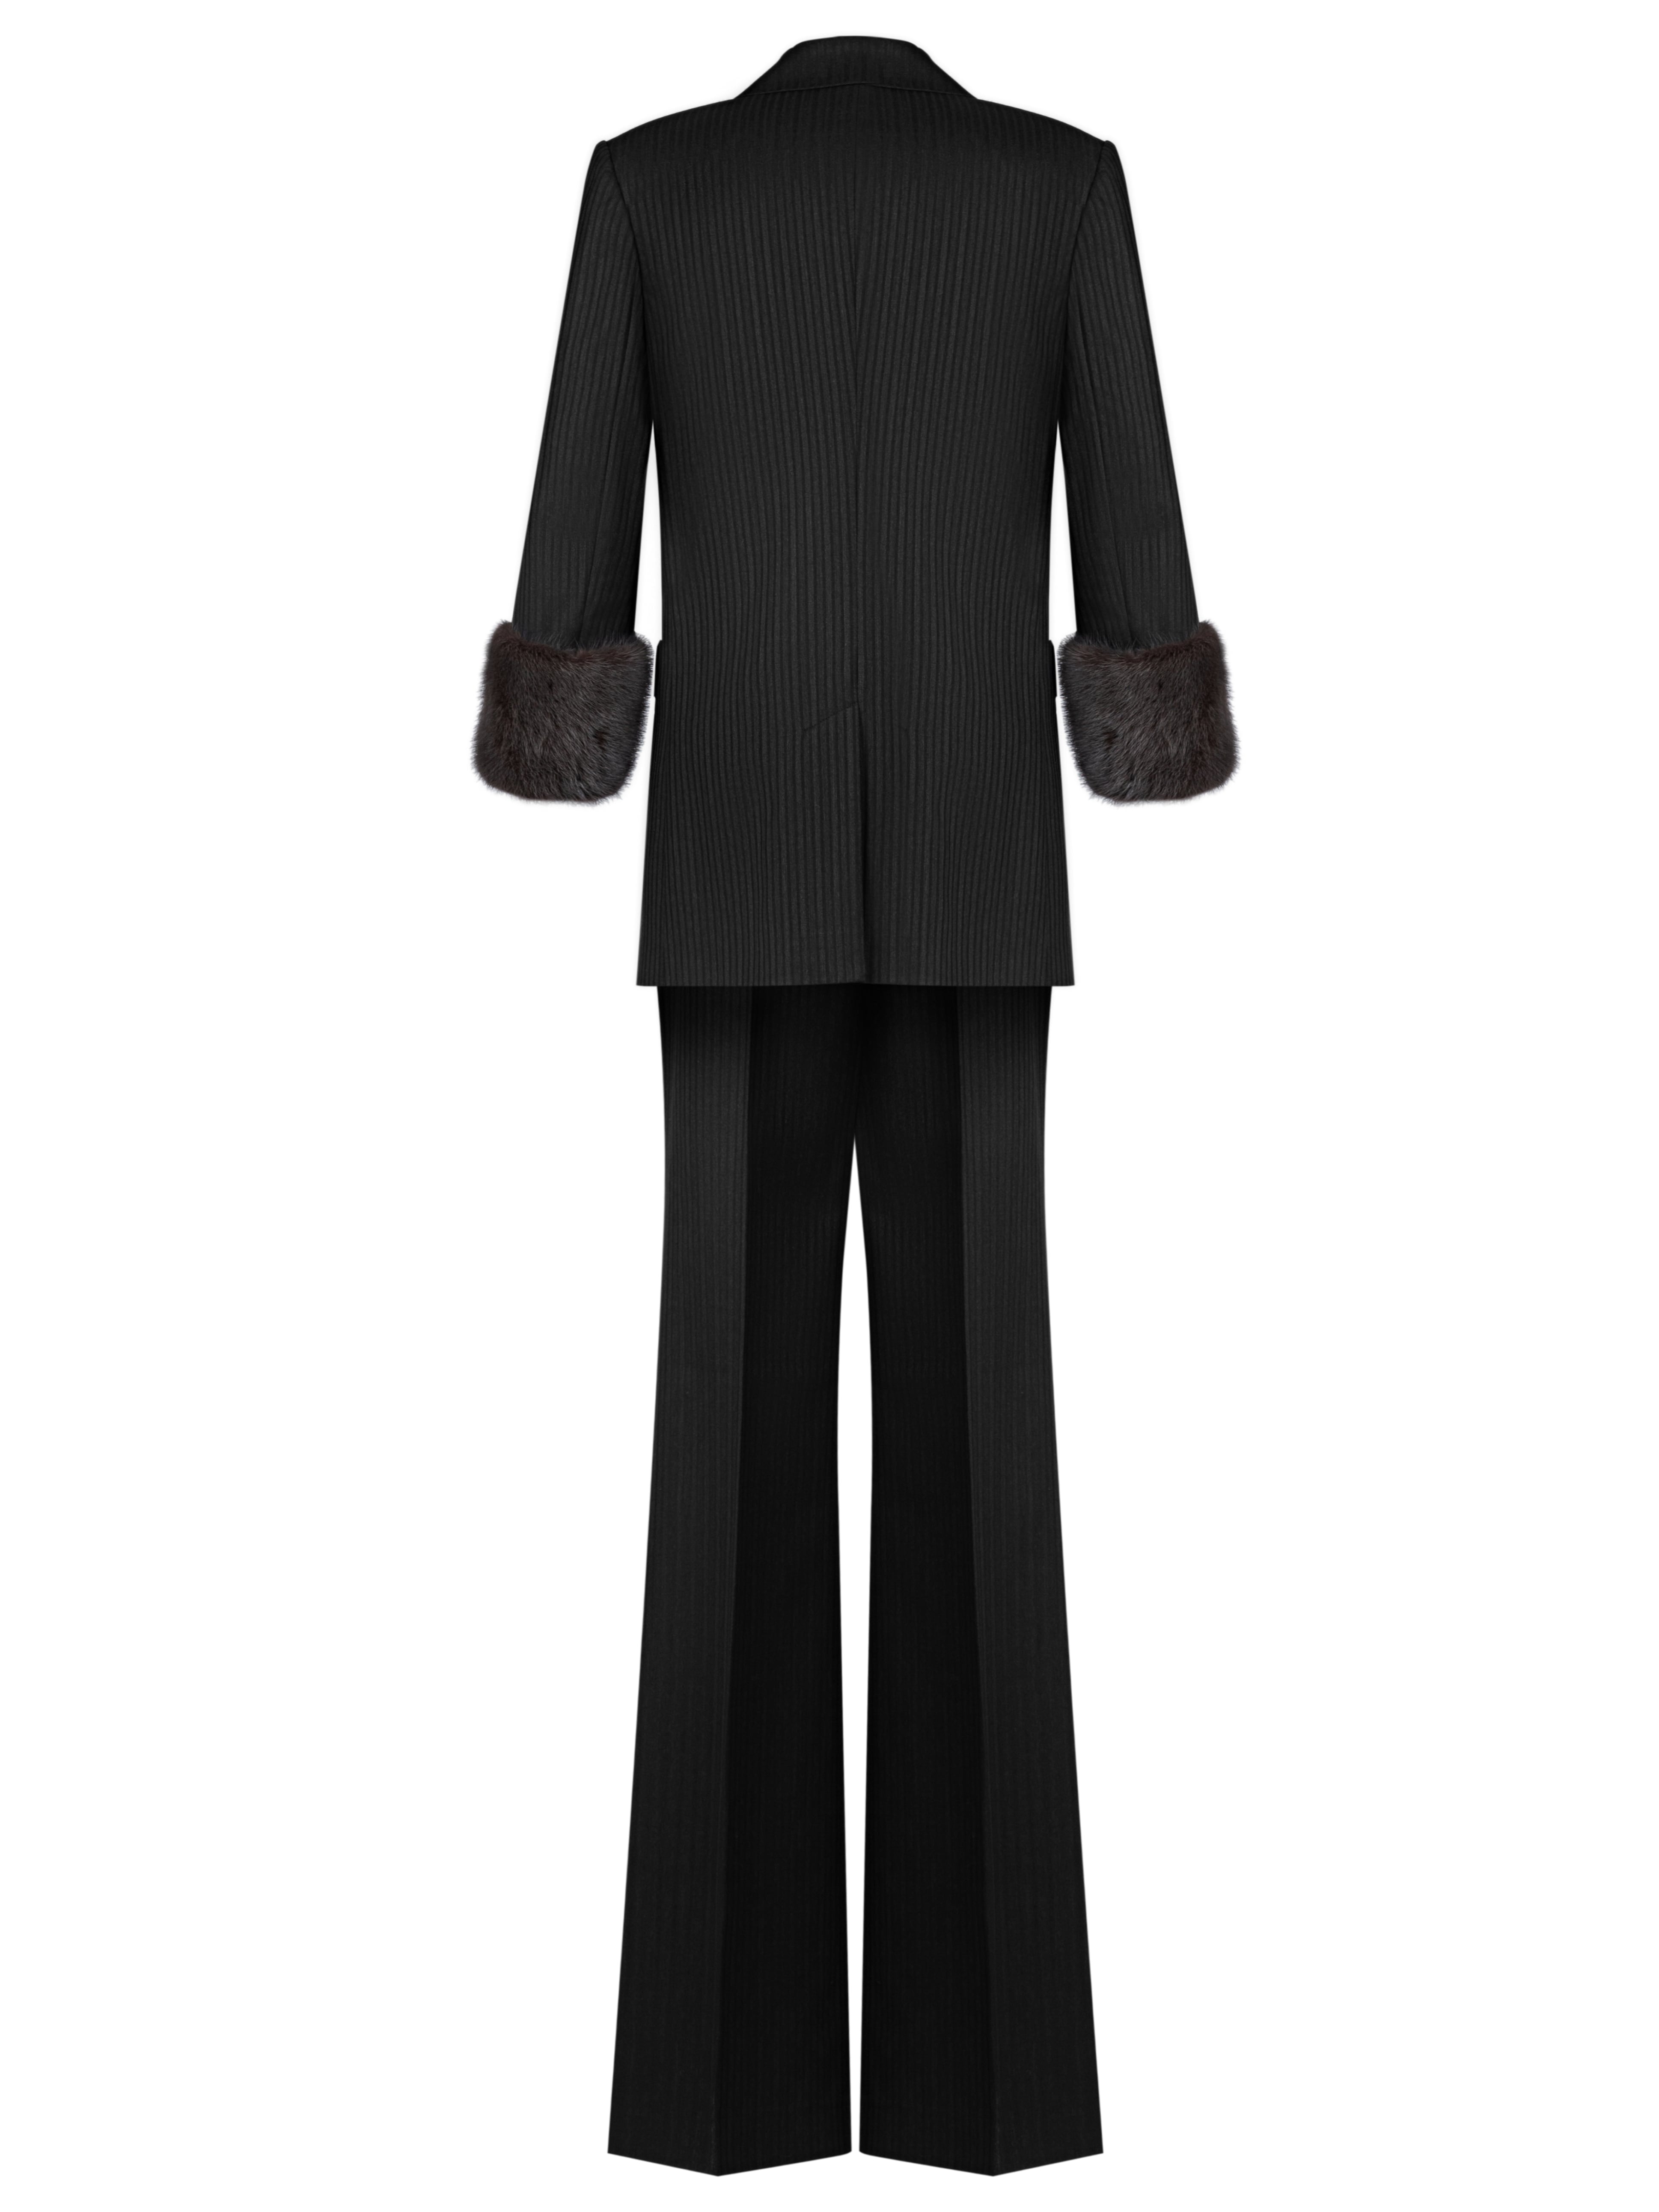 Черный костюм-тройка с норковым мехом, артикул 1-10-002-1703/9МН | Купить в интернет-магазине Yana в Москве